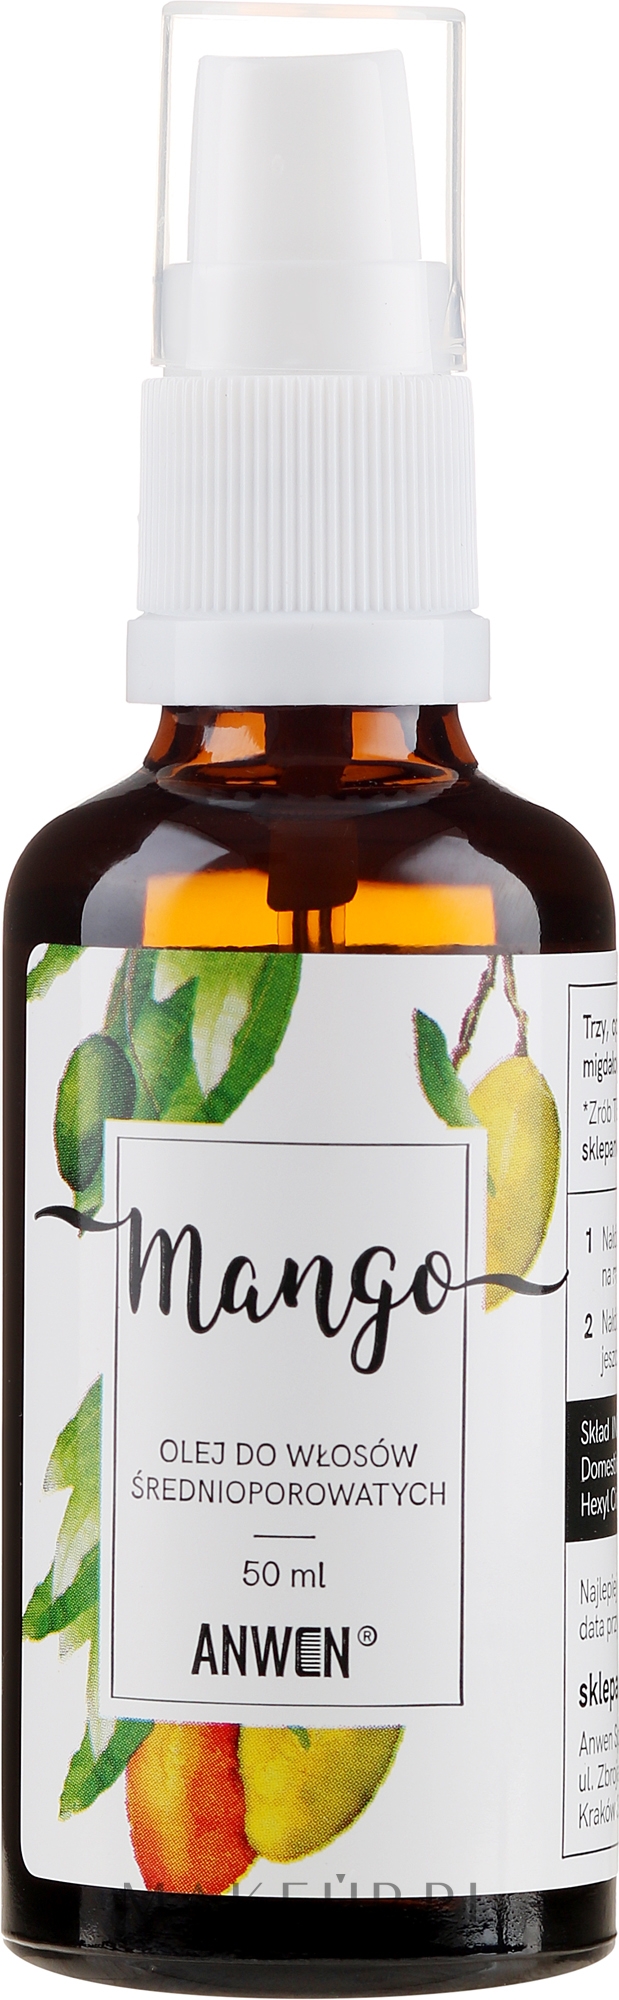 anwen olejek do włosów średnioporowatych mango